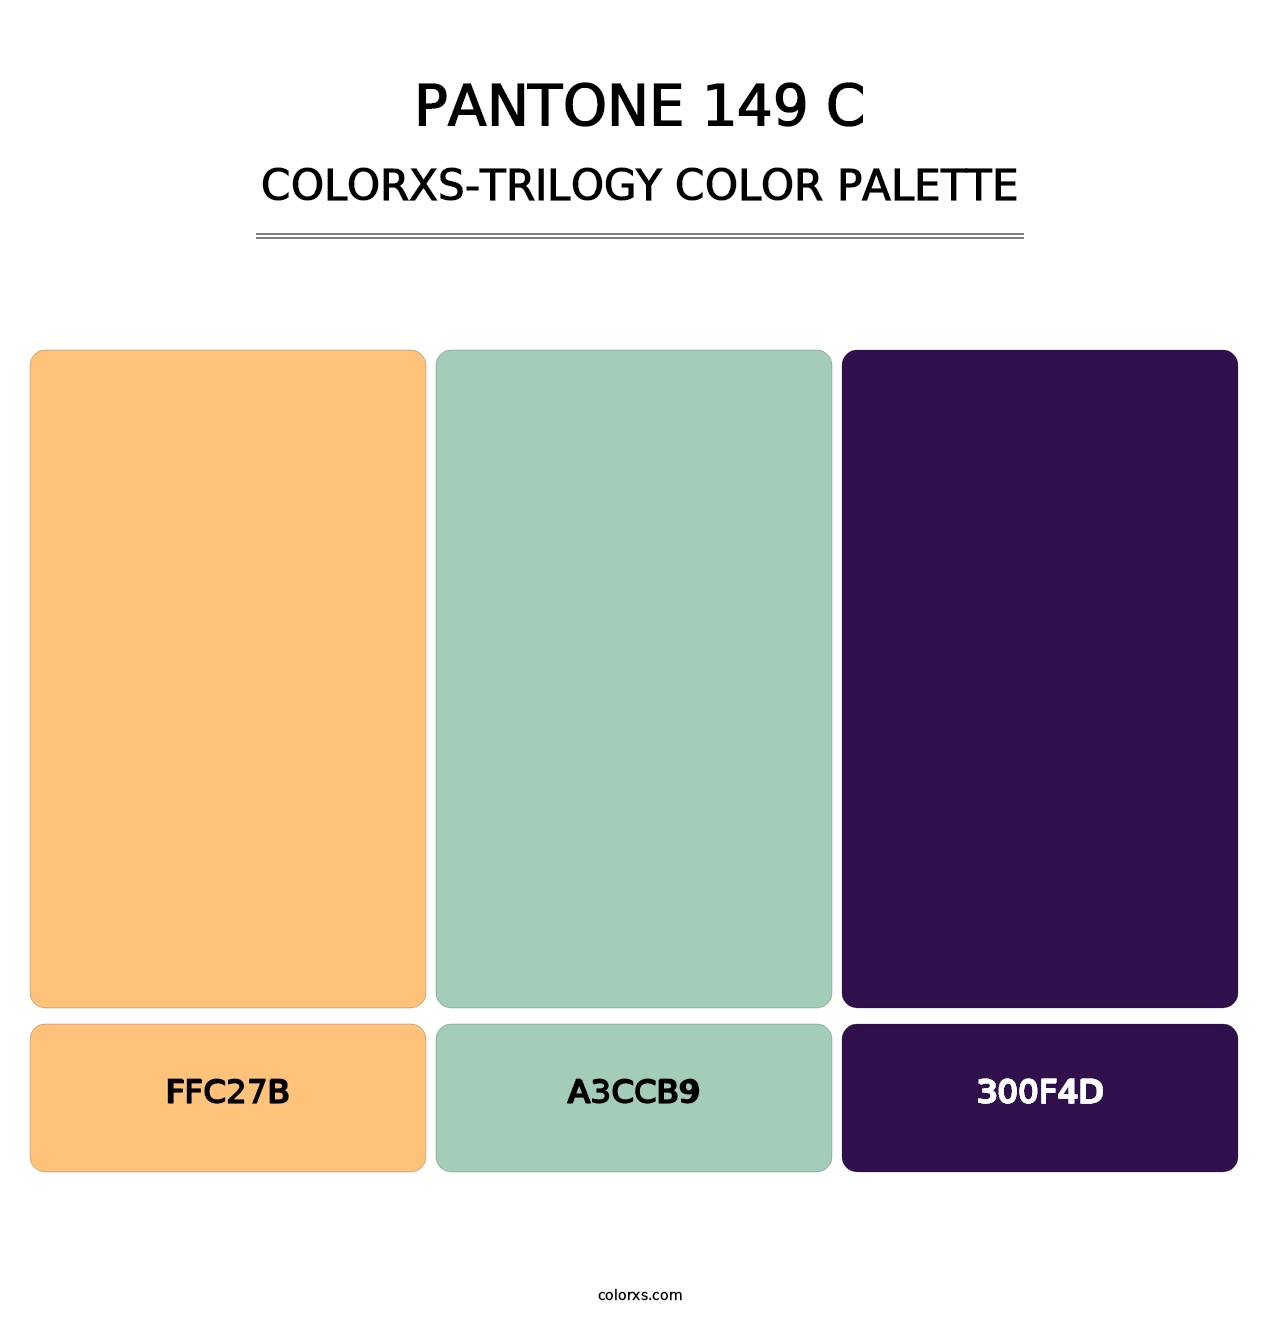 PANTONE 149 C - Colorxs Trilogy Palette